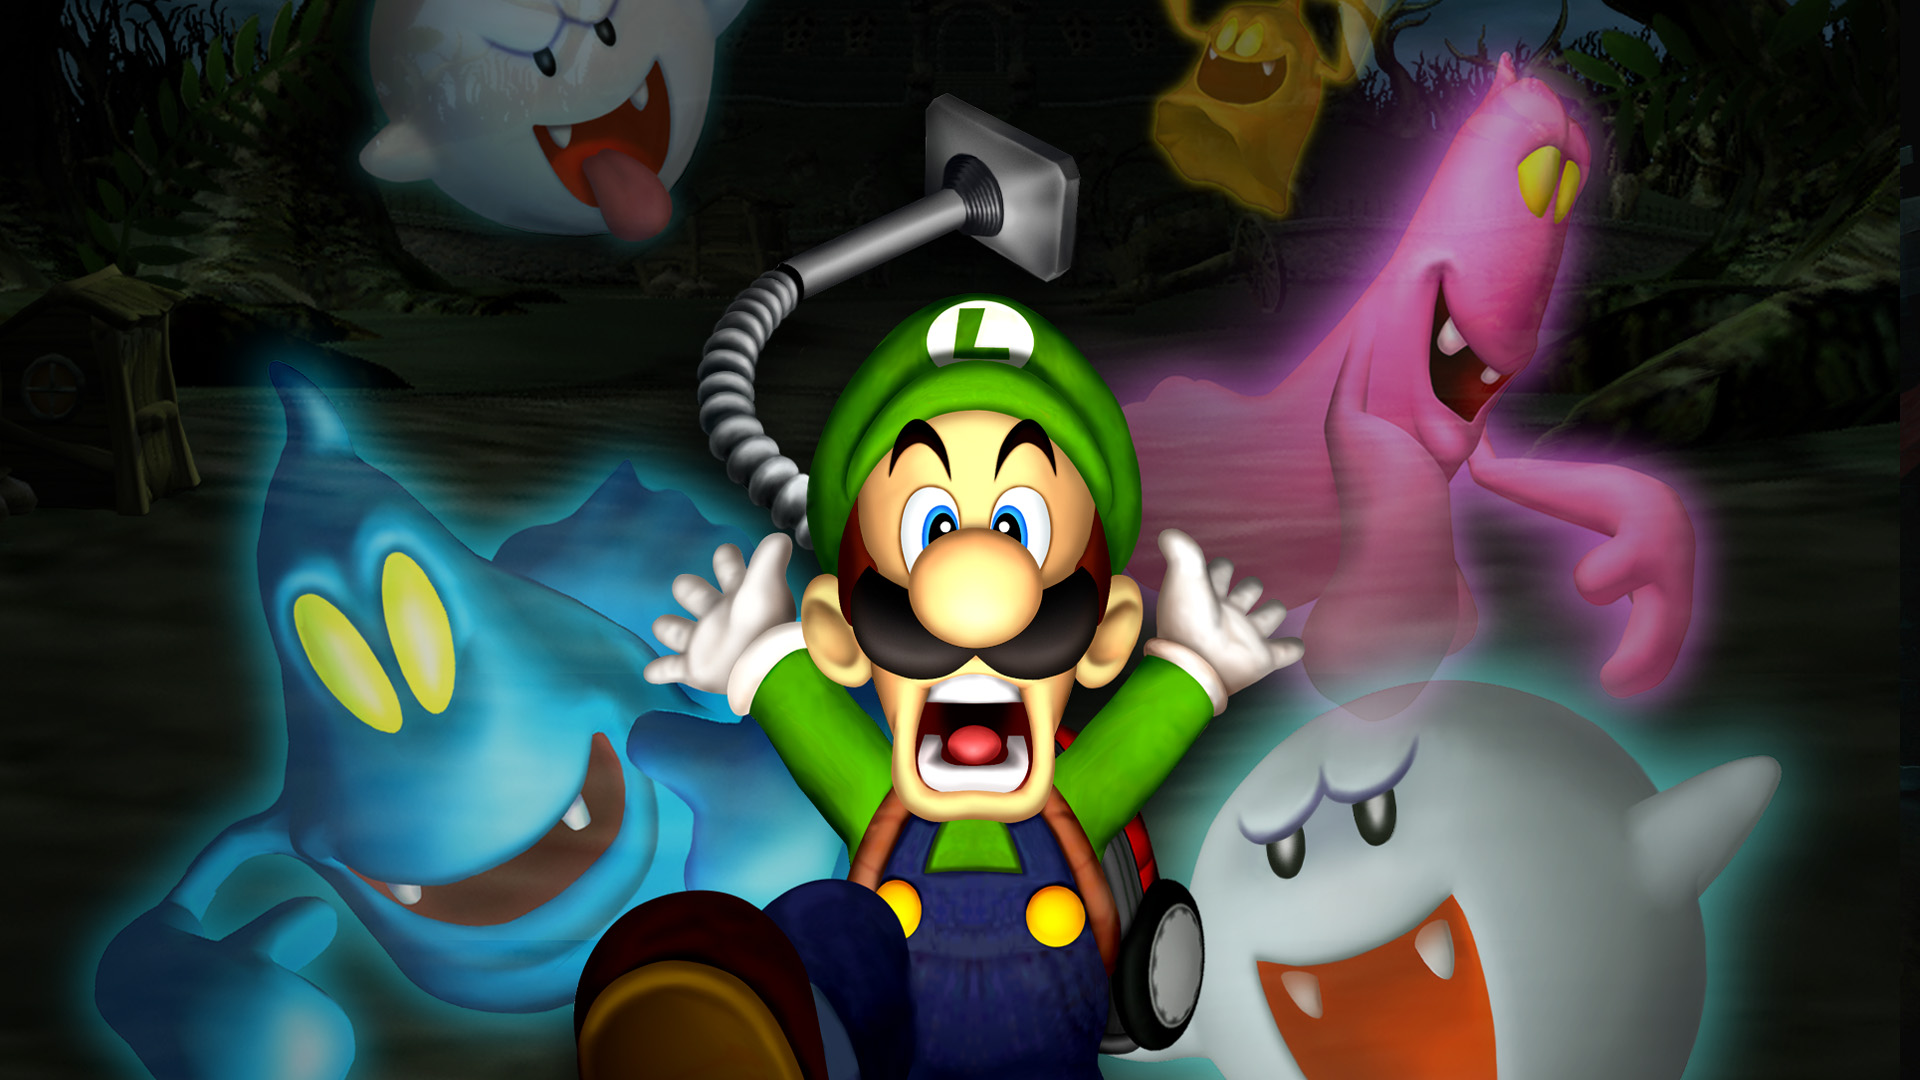 Newer Super Luigi Wii: Dark Moon